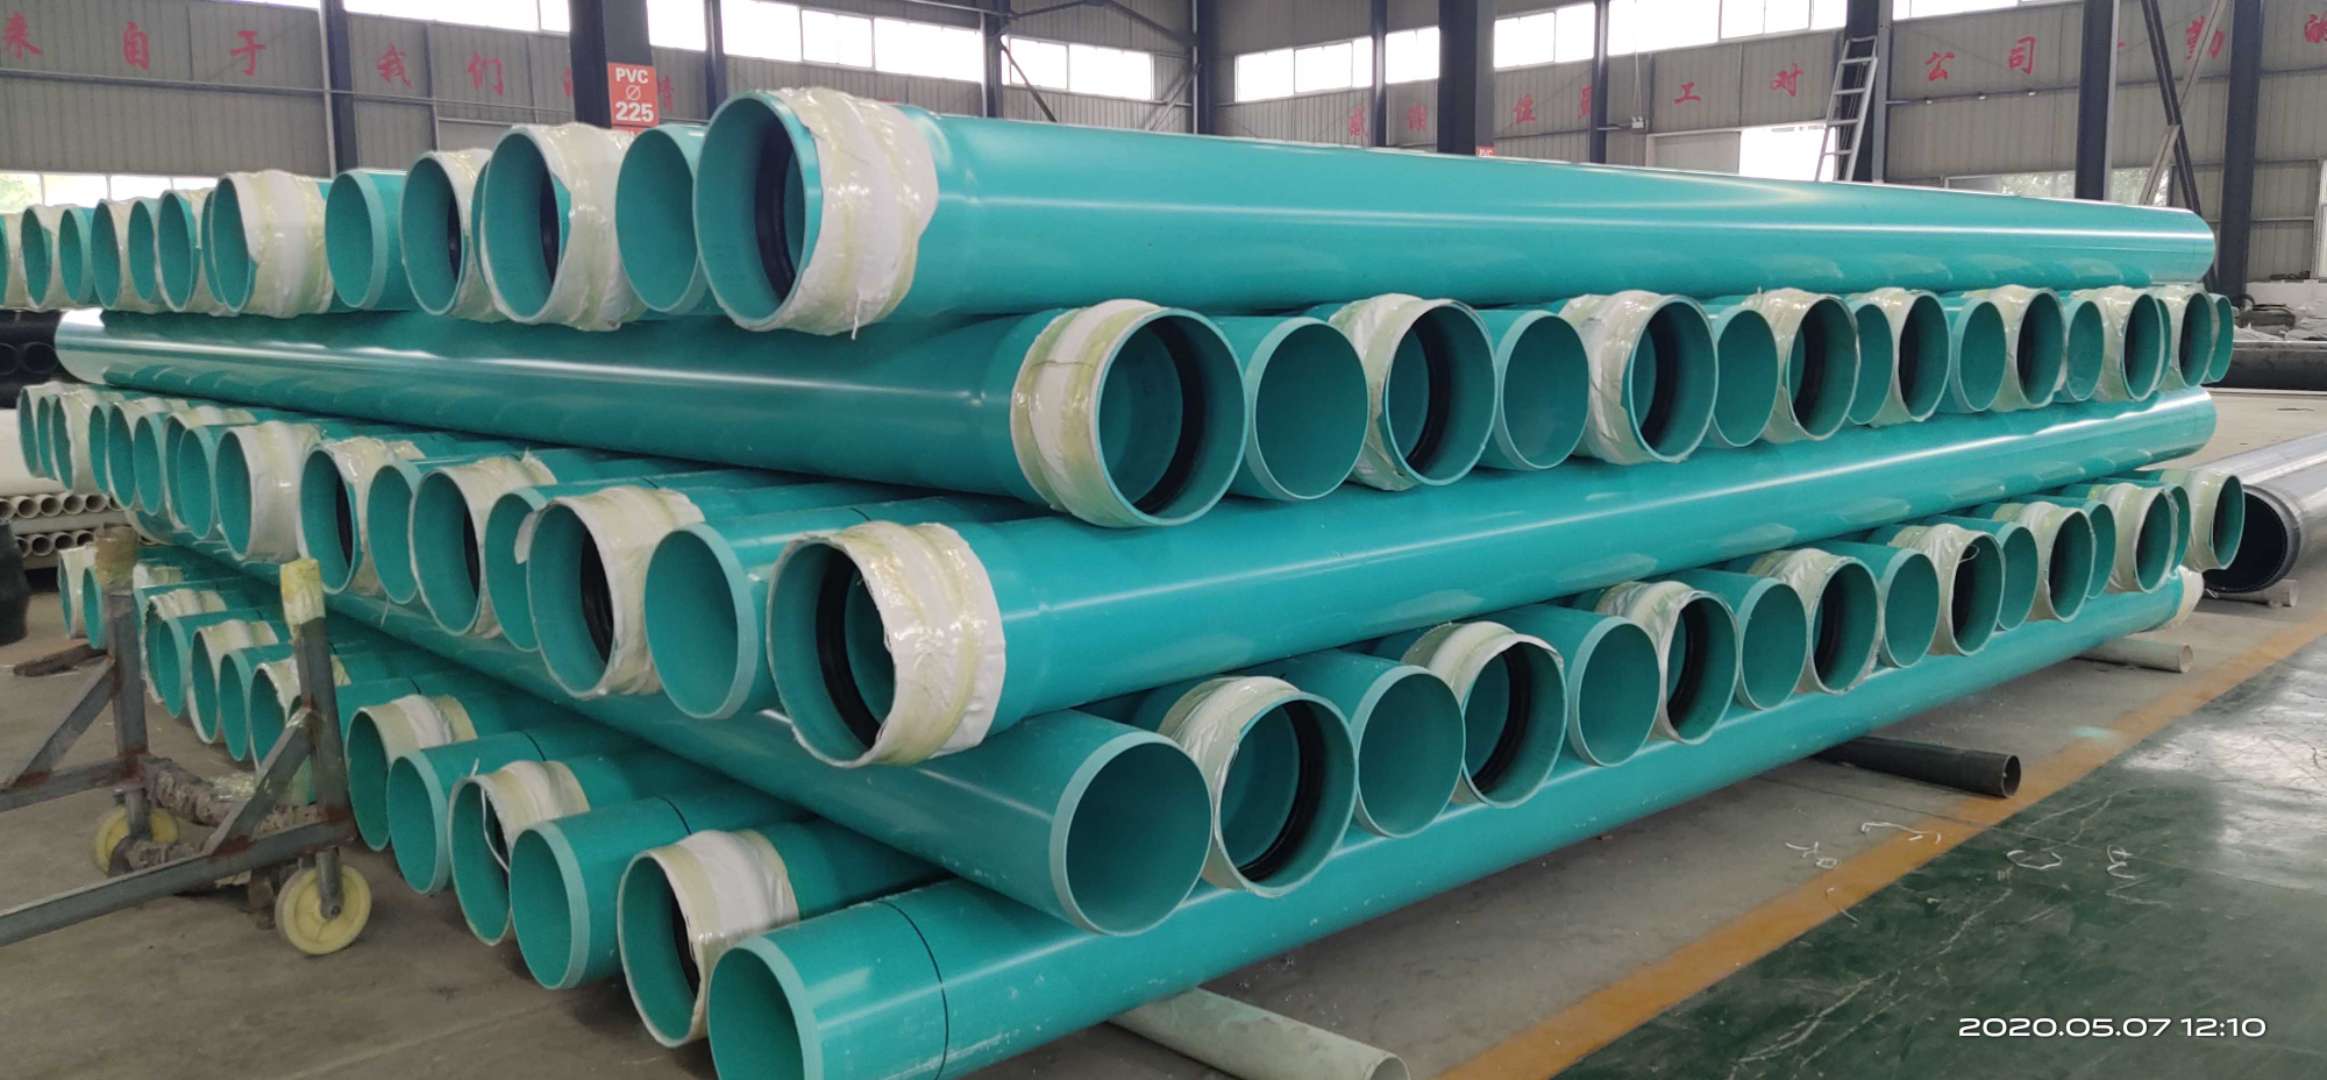 江苏pvc-uh排水管材 PVC-UH管厂 国标产品